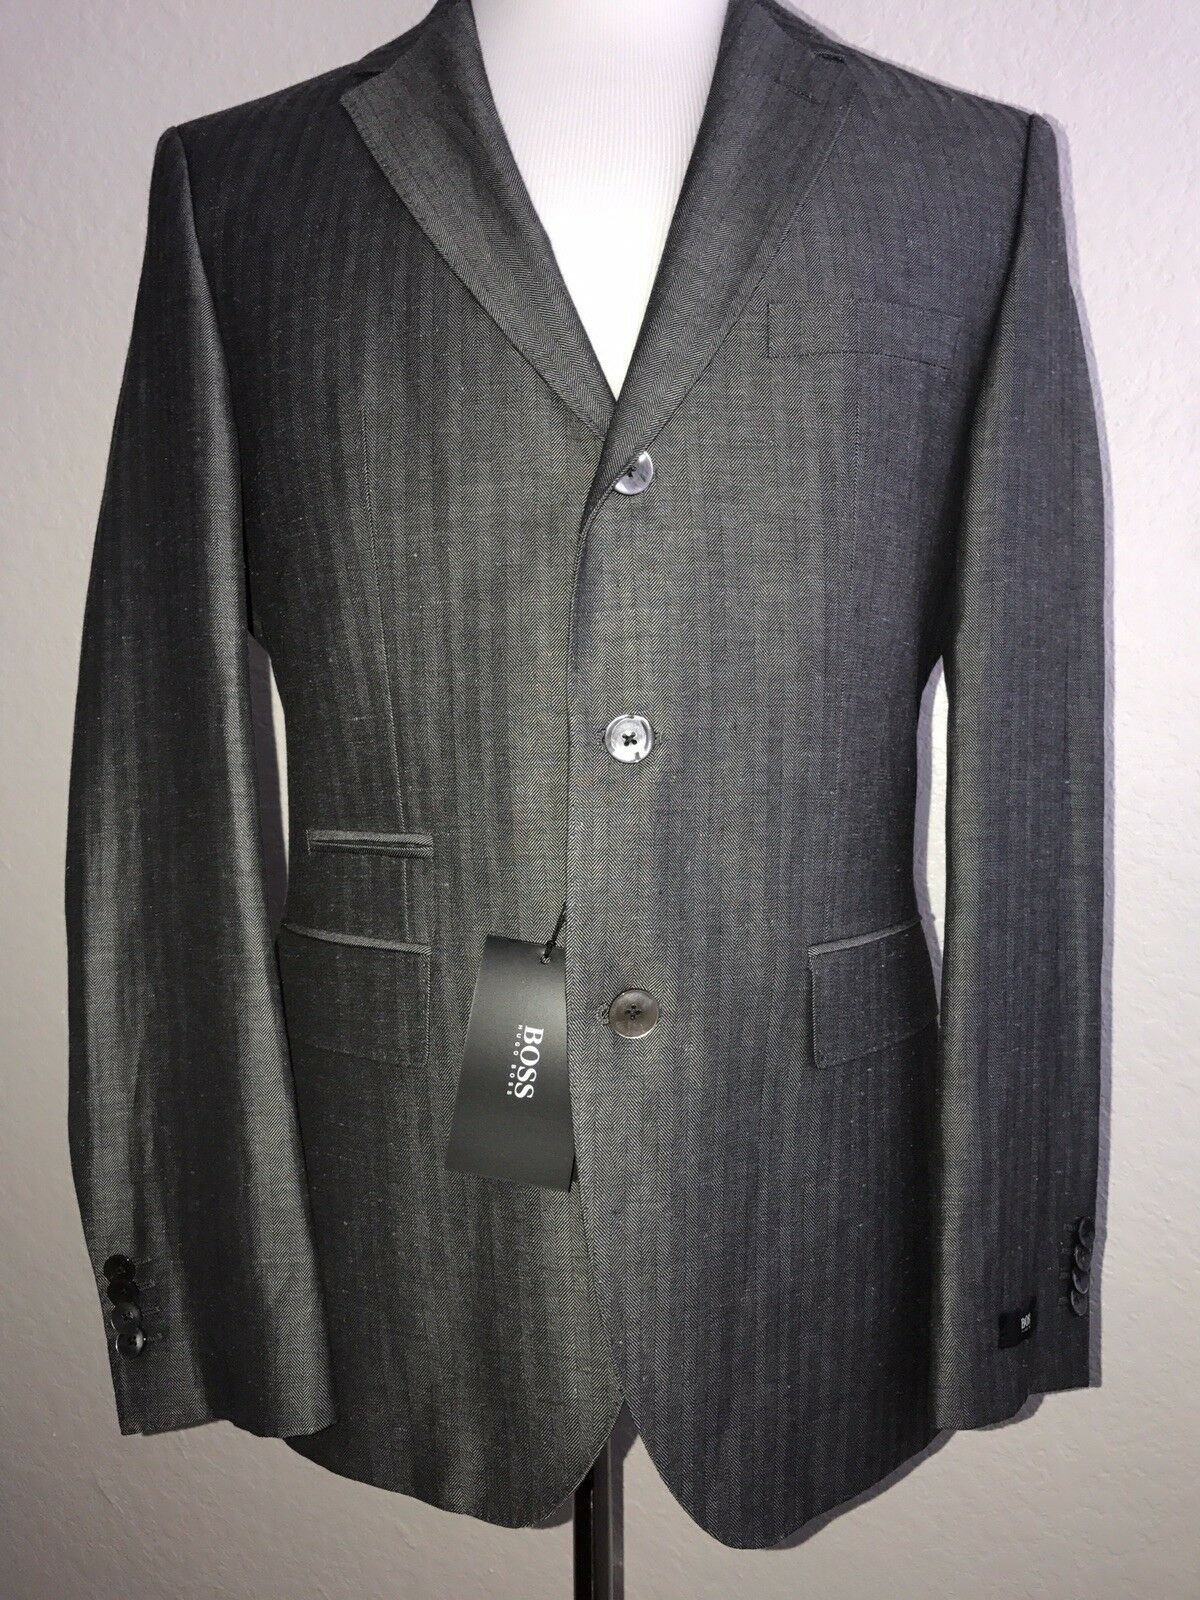 NWT $645 Boss Hugo Boss Johnston Wool - Linen Med Gray Sport Coat Jacket 38R US